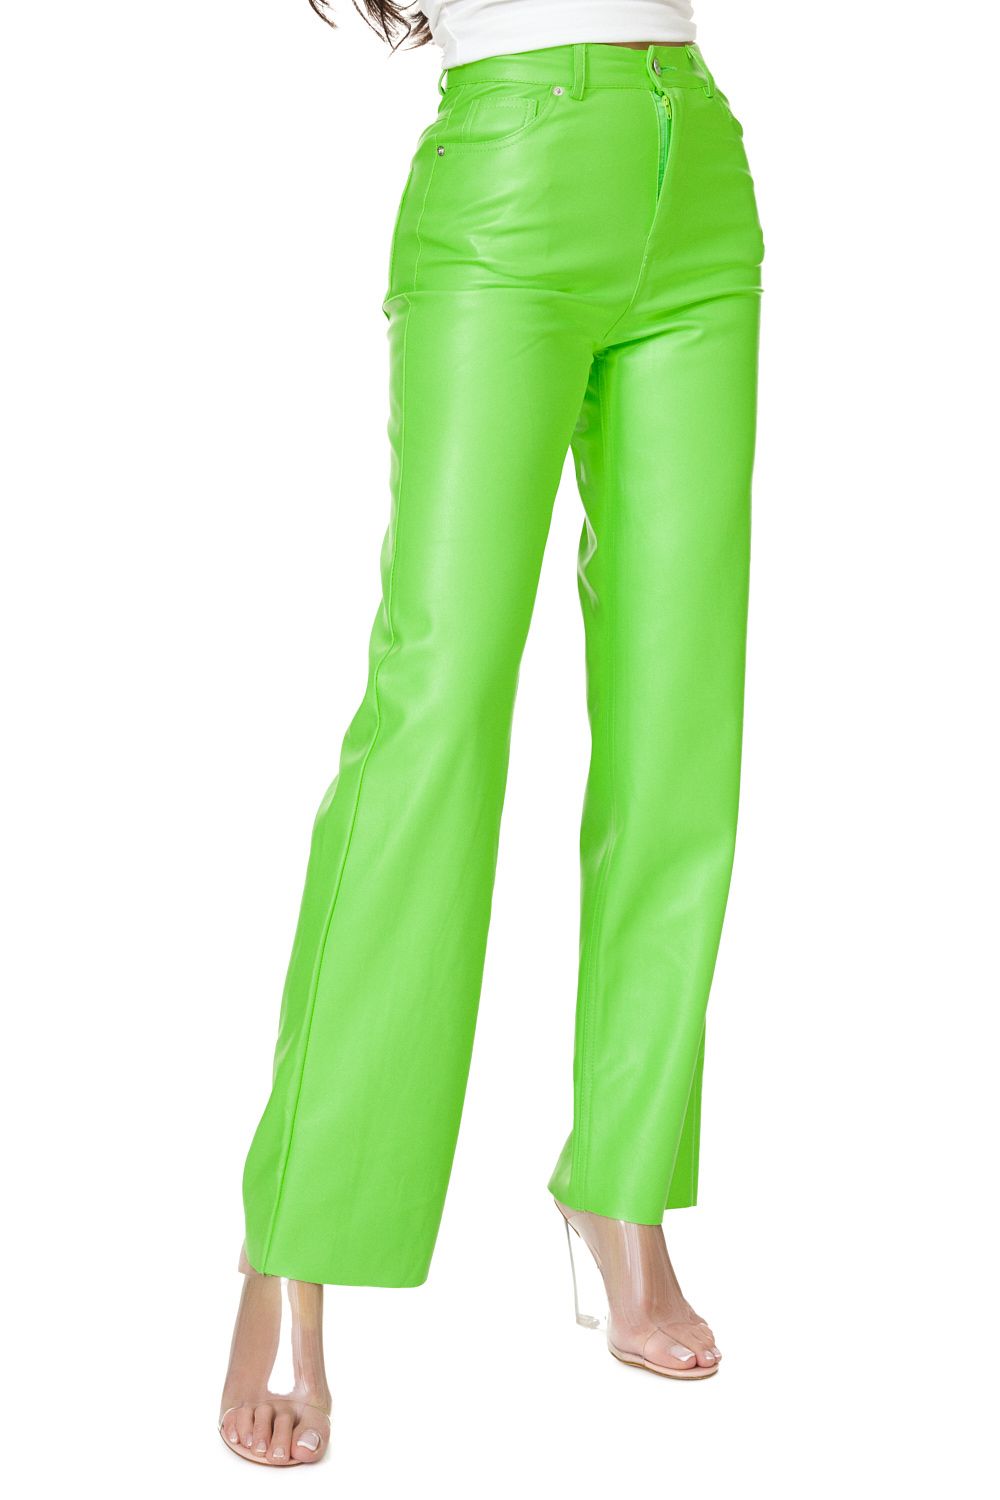 Pantaloni dama eleganti verde neon Pintalo Bogas